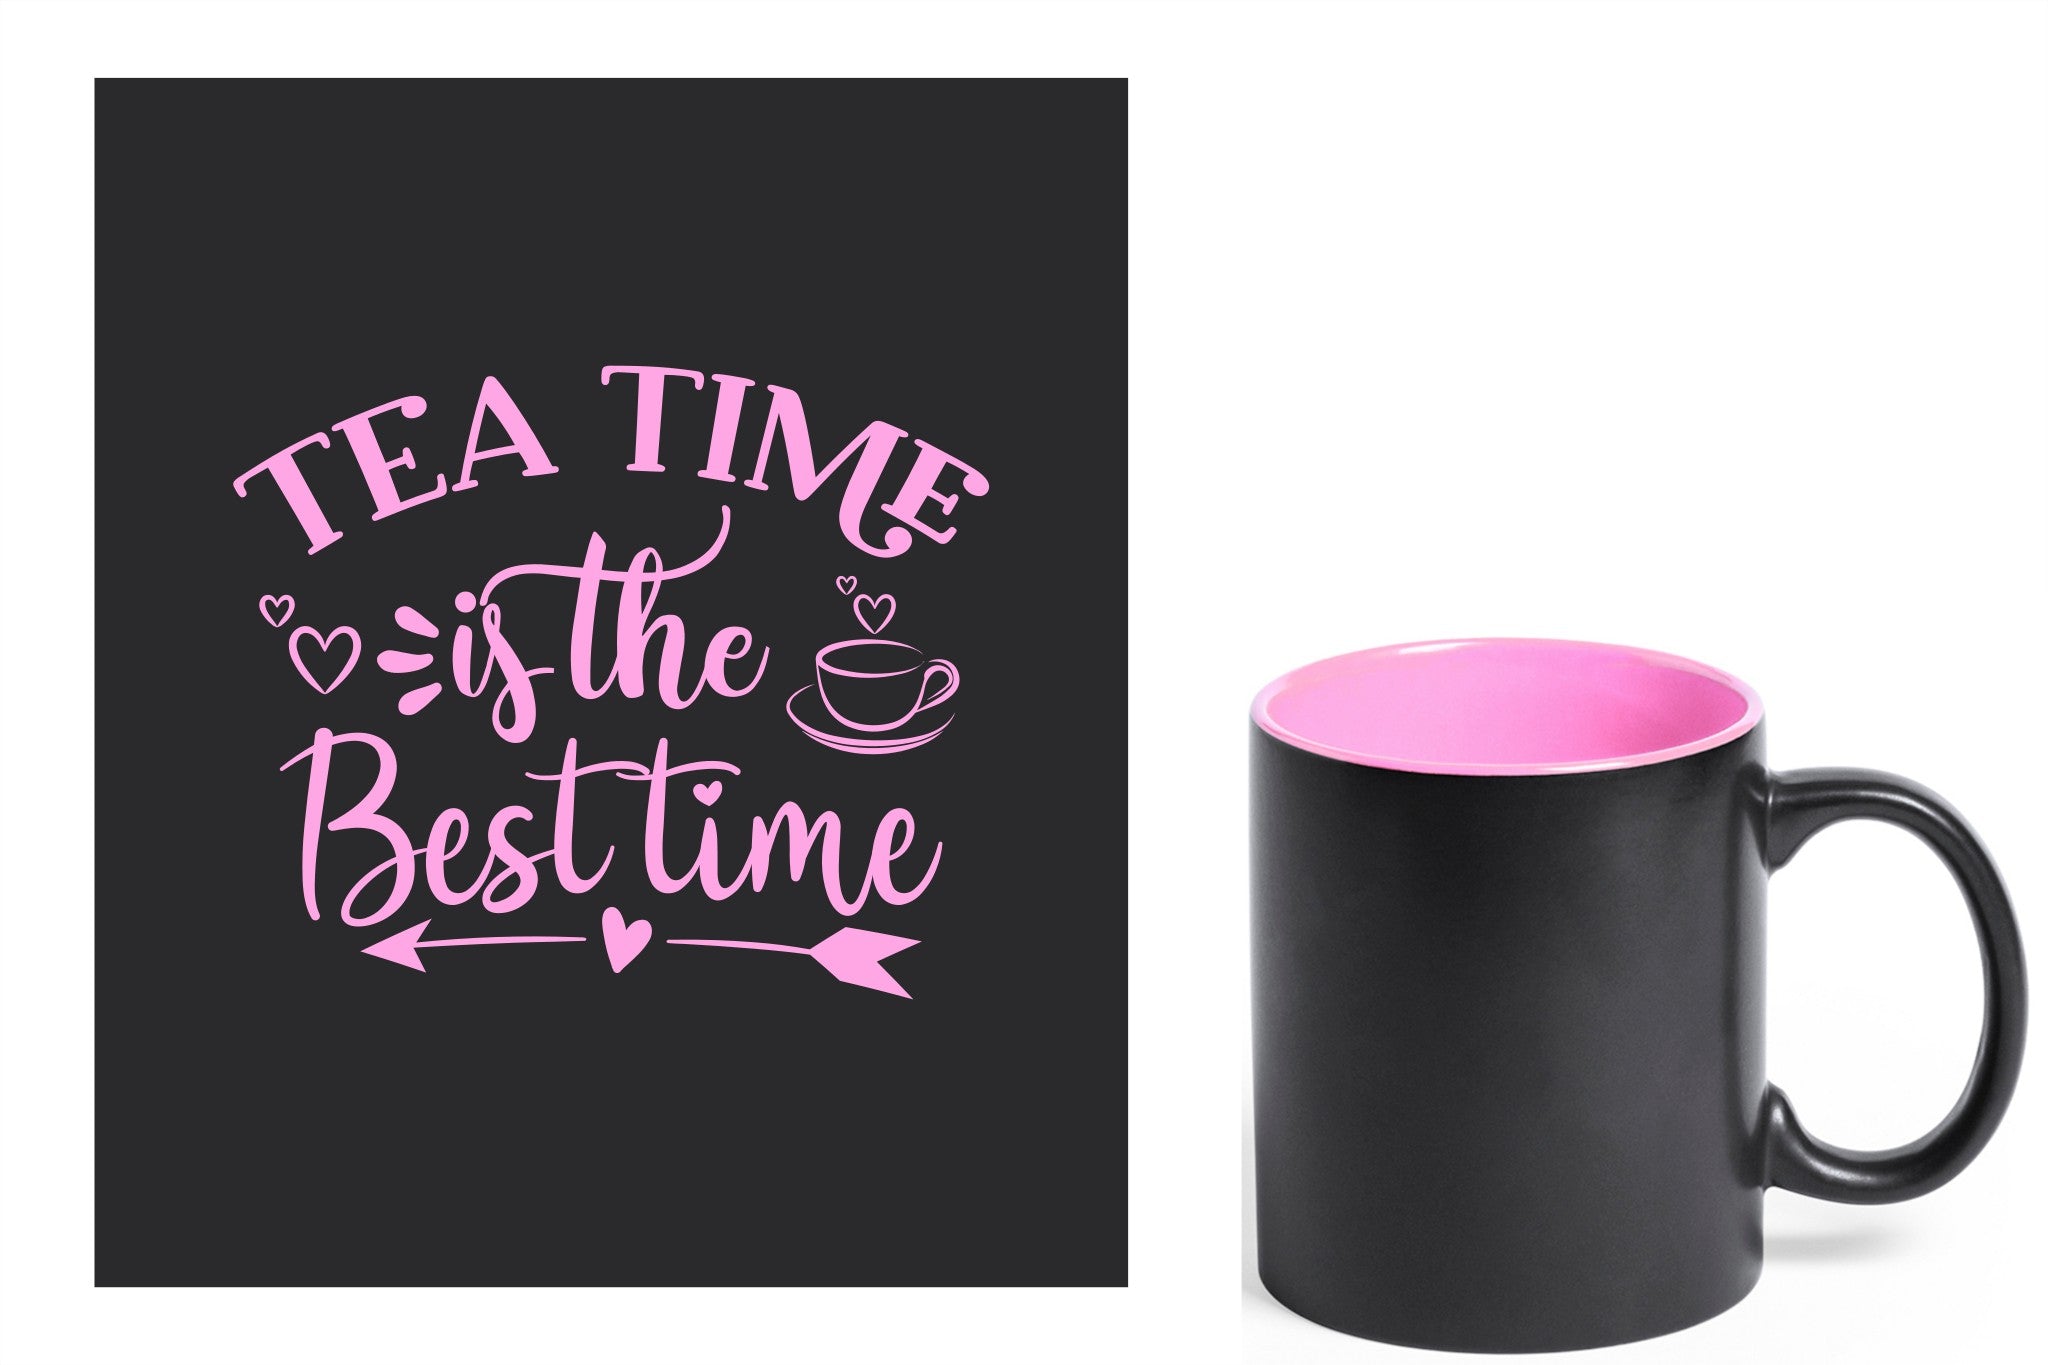 zwarte keramische mok met roze gravure  'Tea time is the best time'.